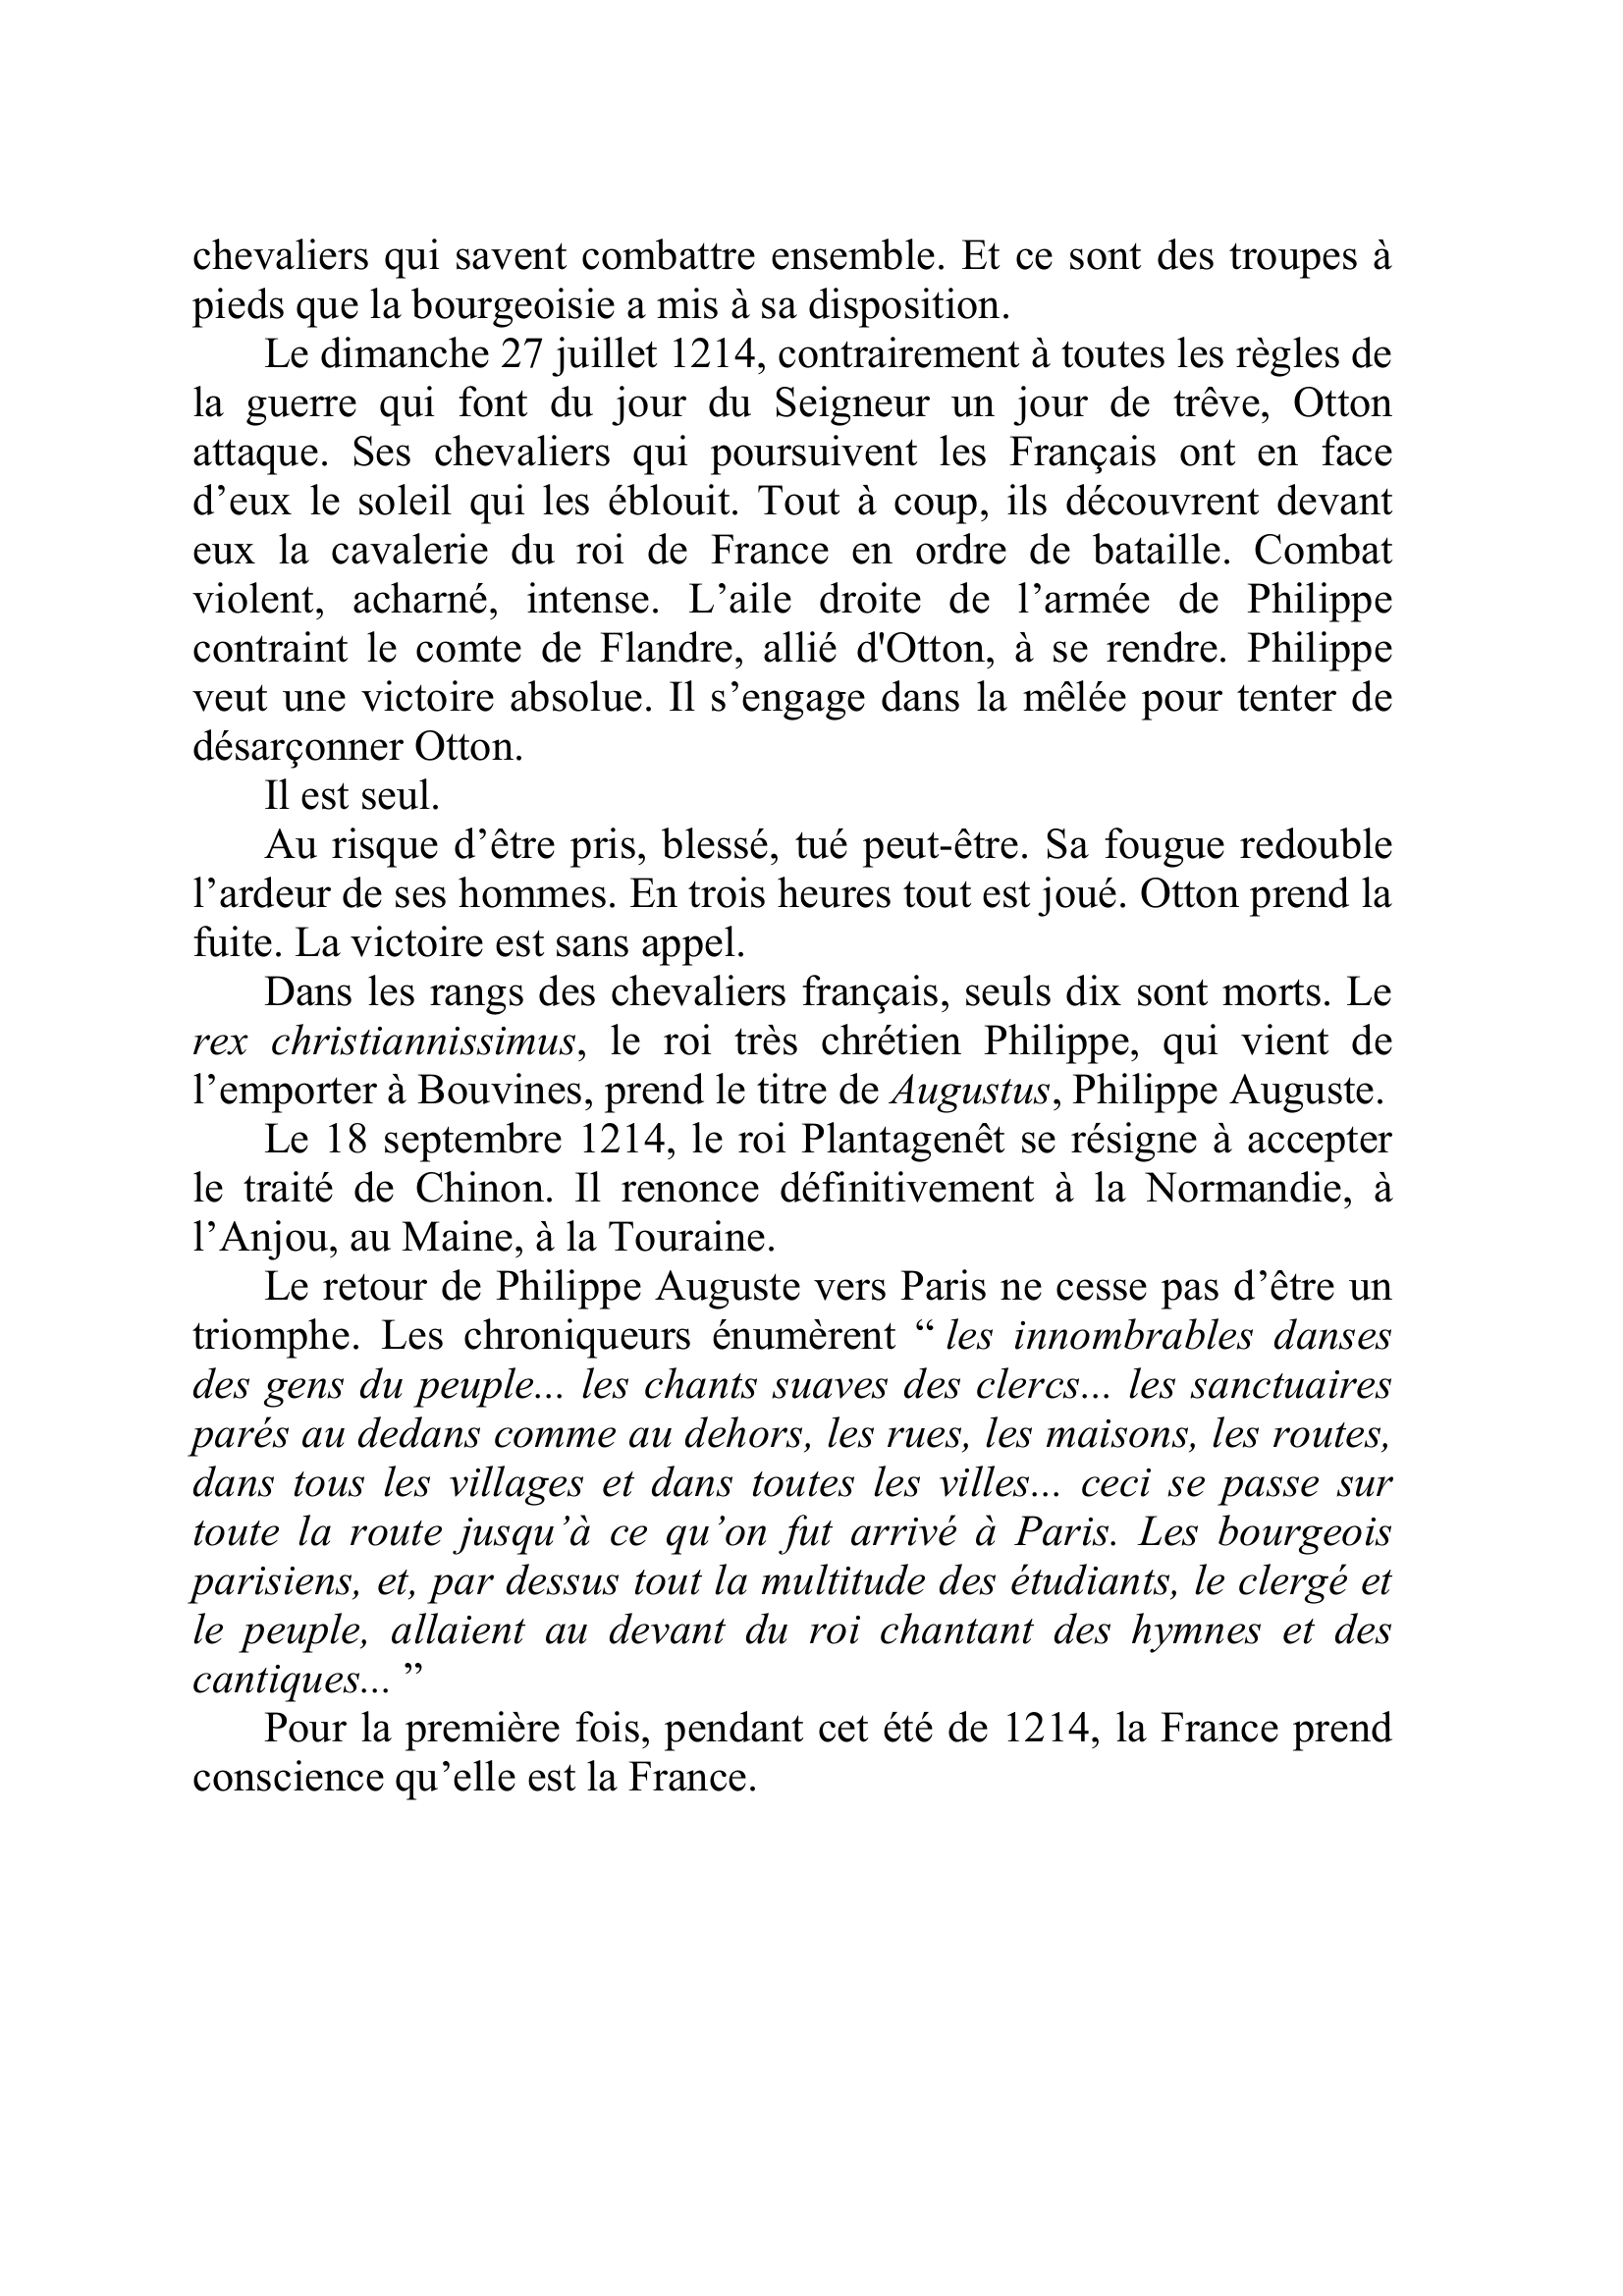 Prévisualisation du document " De notoriété publique, le roi de France ne reconnaît au
temporel aucune autorité supérieure à la sienne " déclare en 1204 le
pape Innocent III.